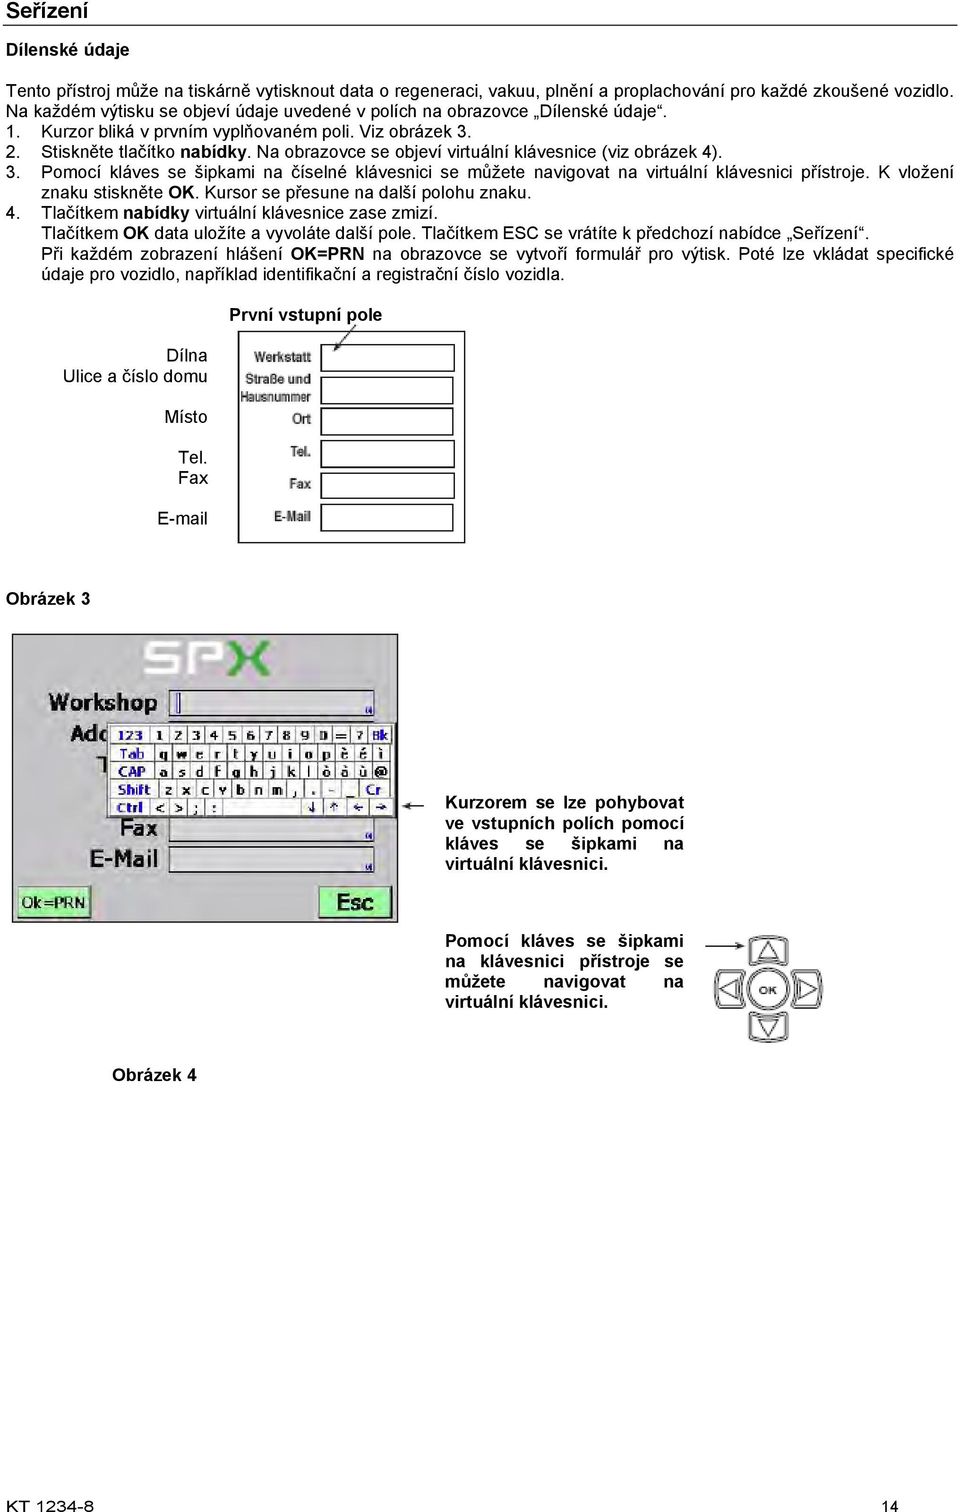 Na obrazovce se objeví virtuální klávesnice (viz obrázek 4). 3. Pomocí kláves se šipkami na číselné klávesnici se můžete navigovat na virtuální klávesnici přístroje. K vložení znaku stiskněte OK.